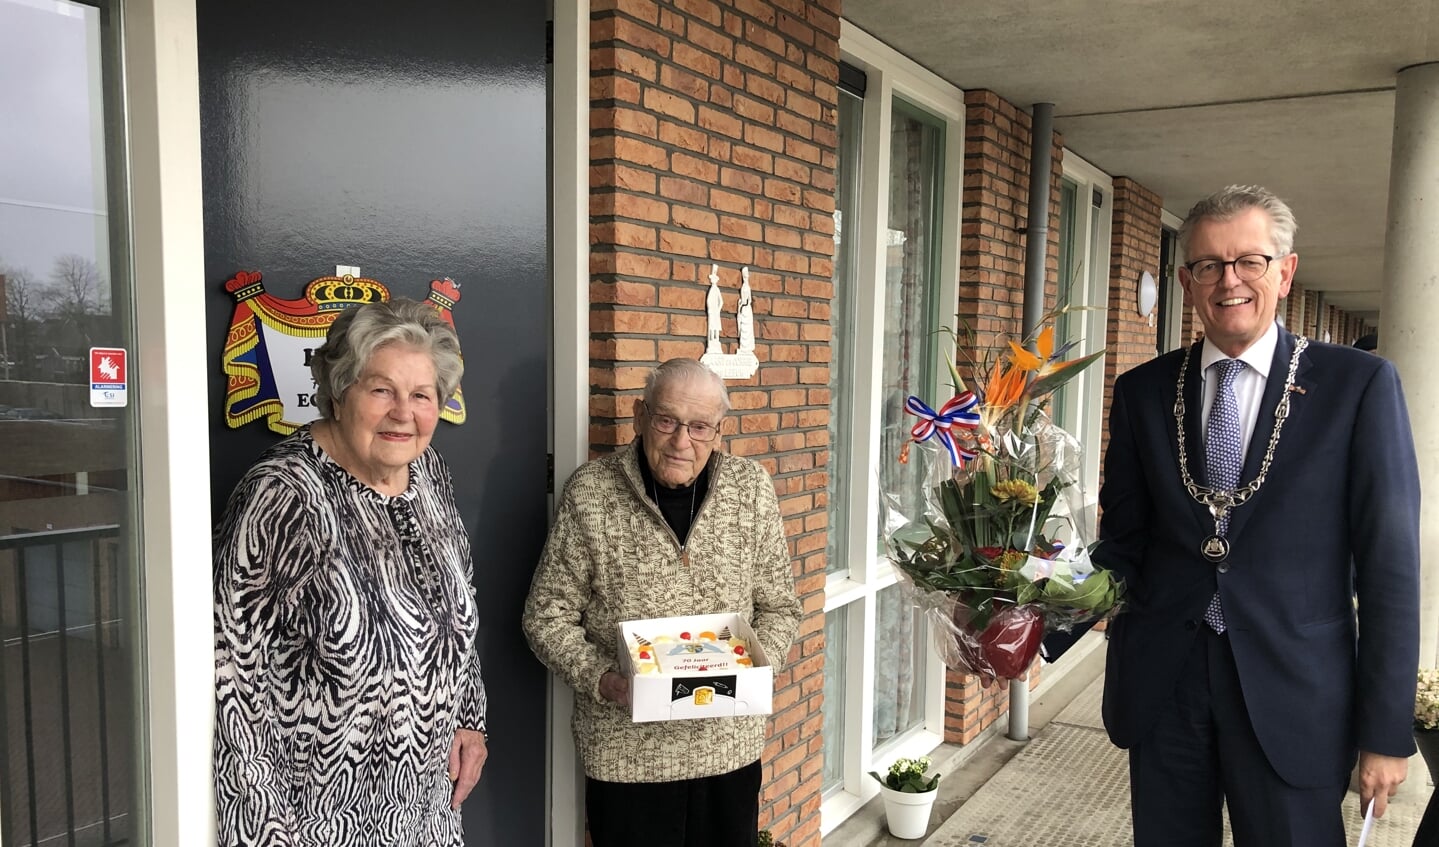 Echtpaar De Leeuw - Timmer krijgen persoonlijke felicitaties van burgemeester Gorter